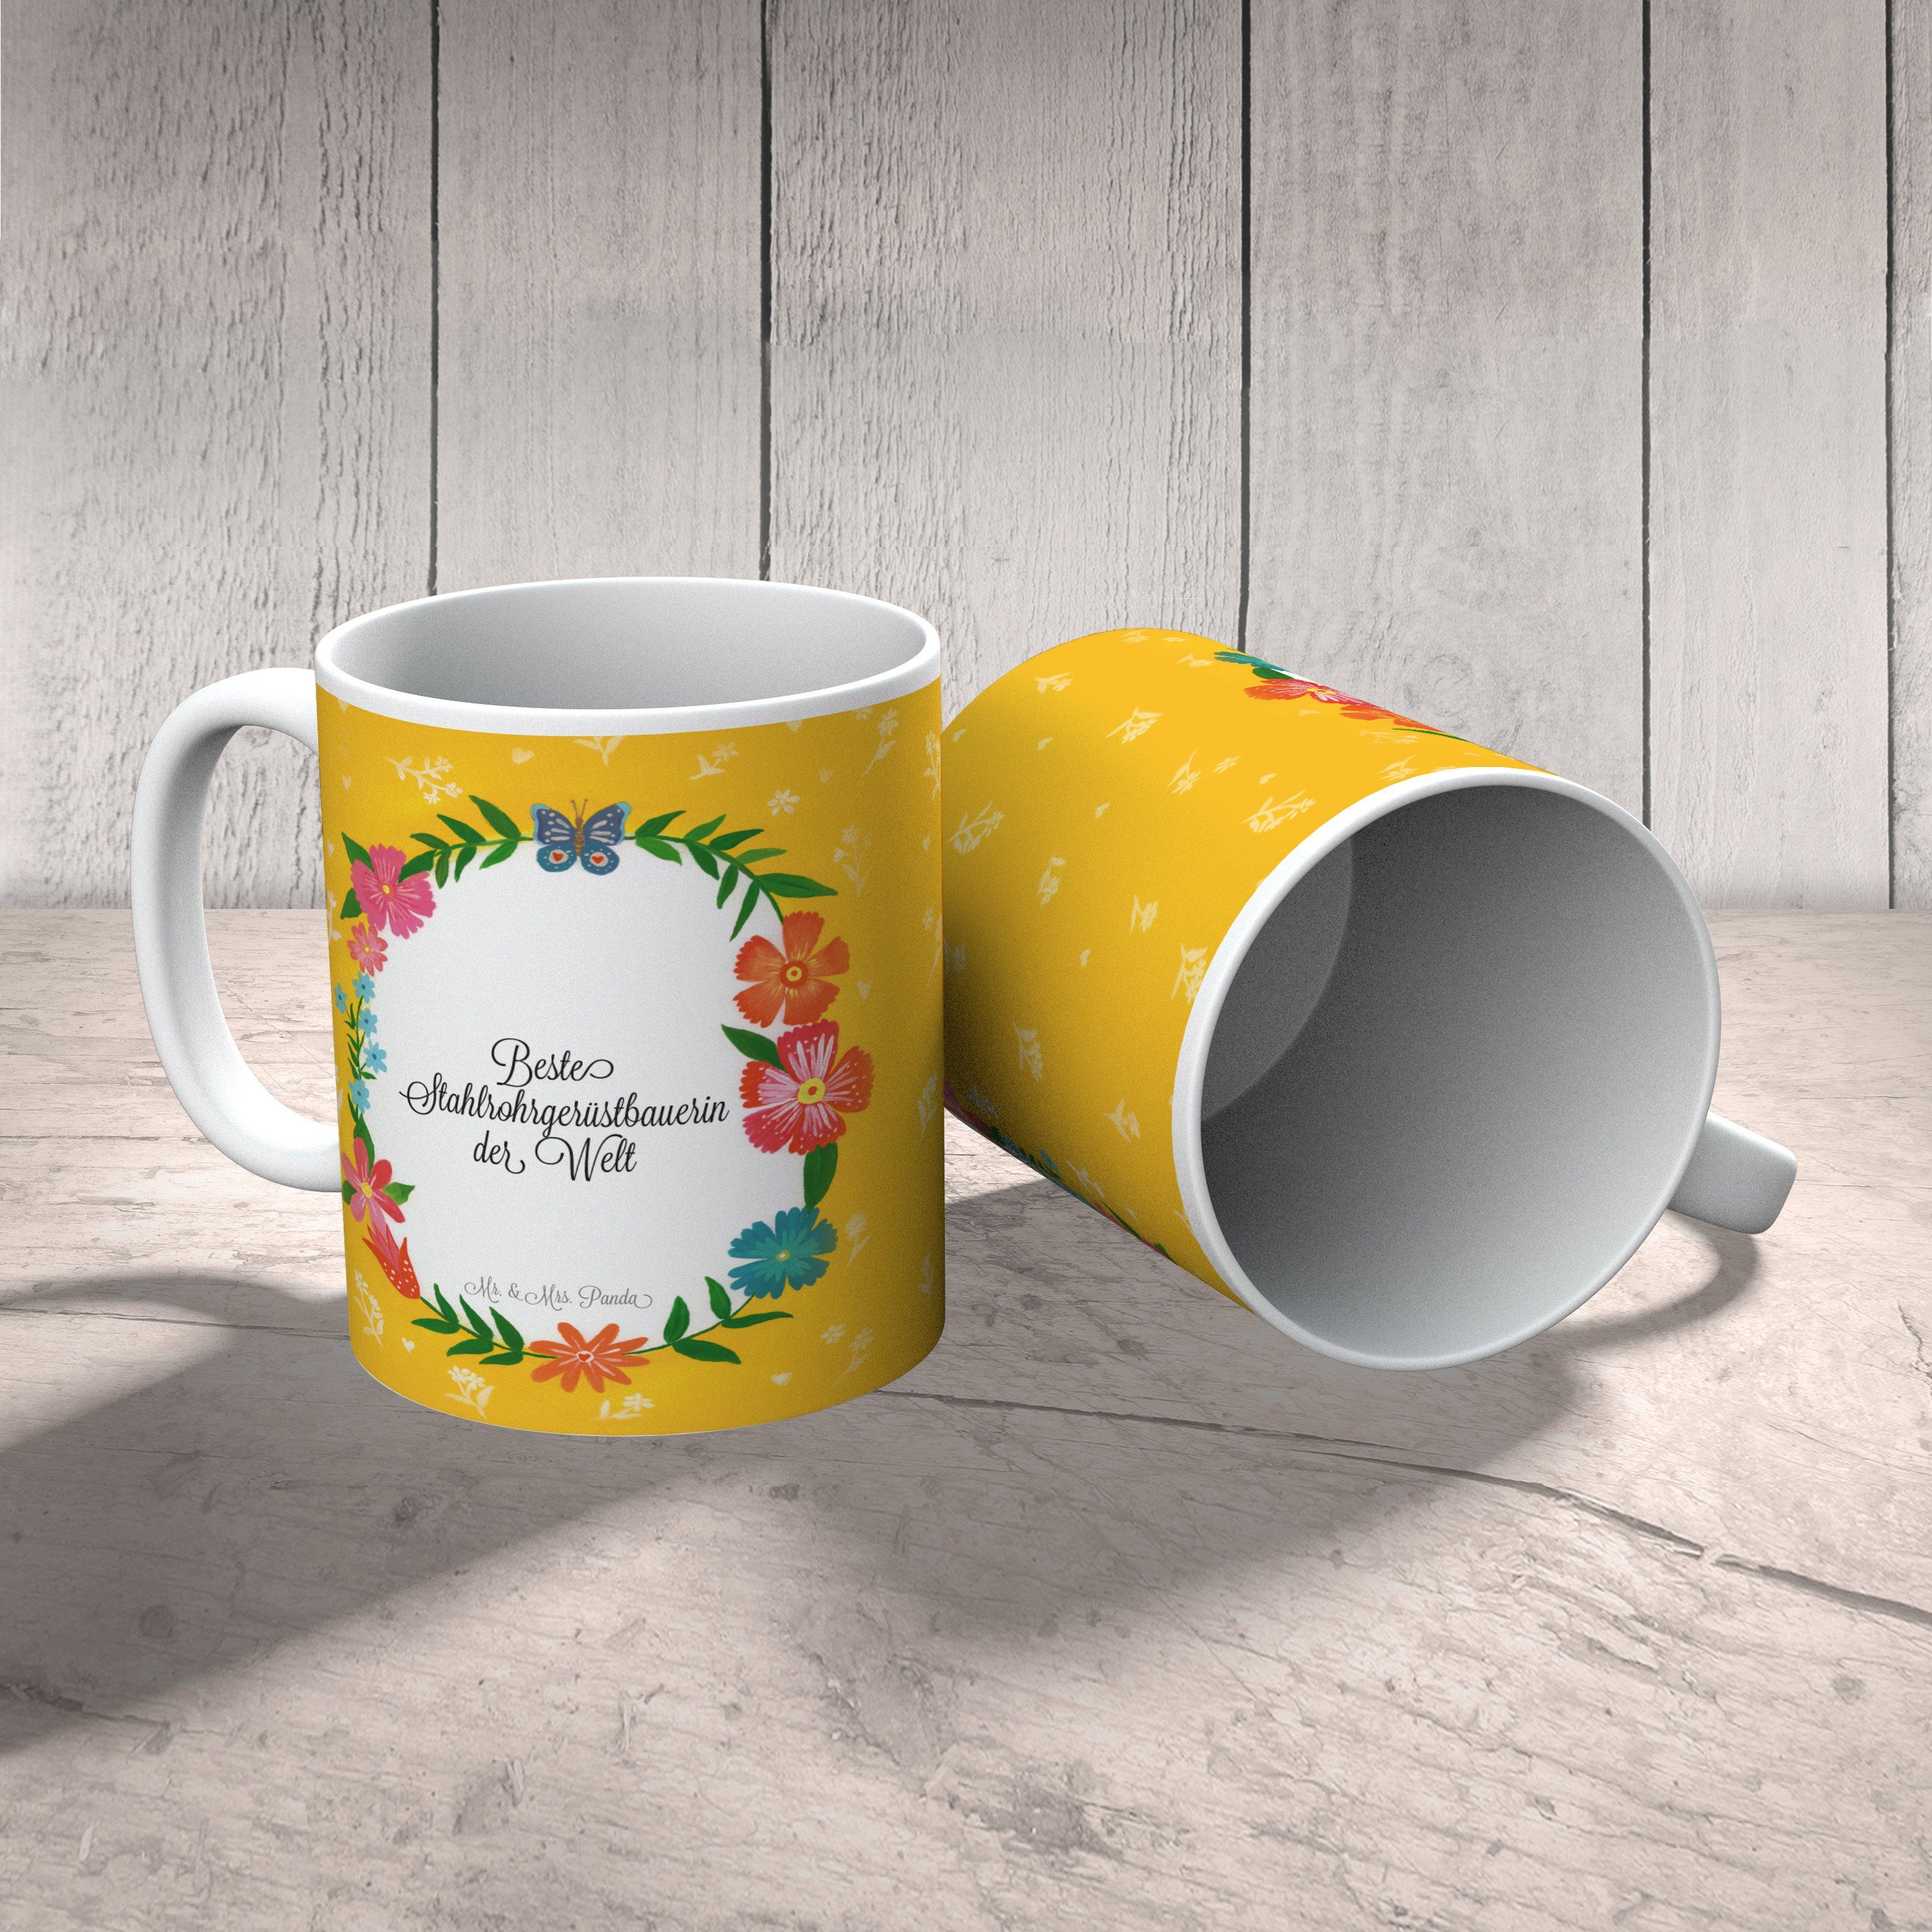 Mr. & Mrs. Panda Abschluss, Geschenk, Stahlrohrgerüstbauerin Kaffeetas, Keramik Tasse - Kaffeebecher